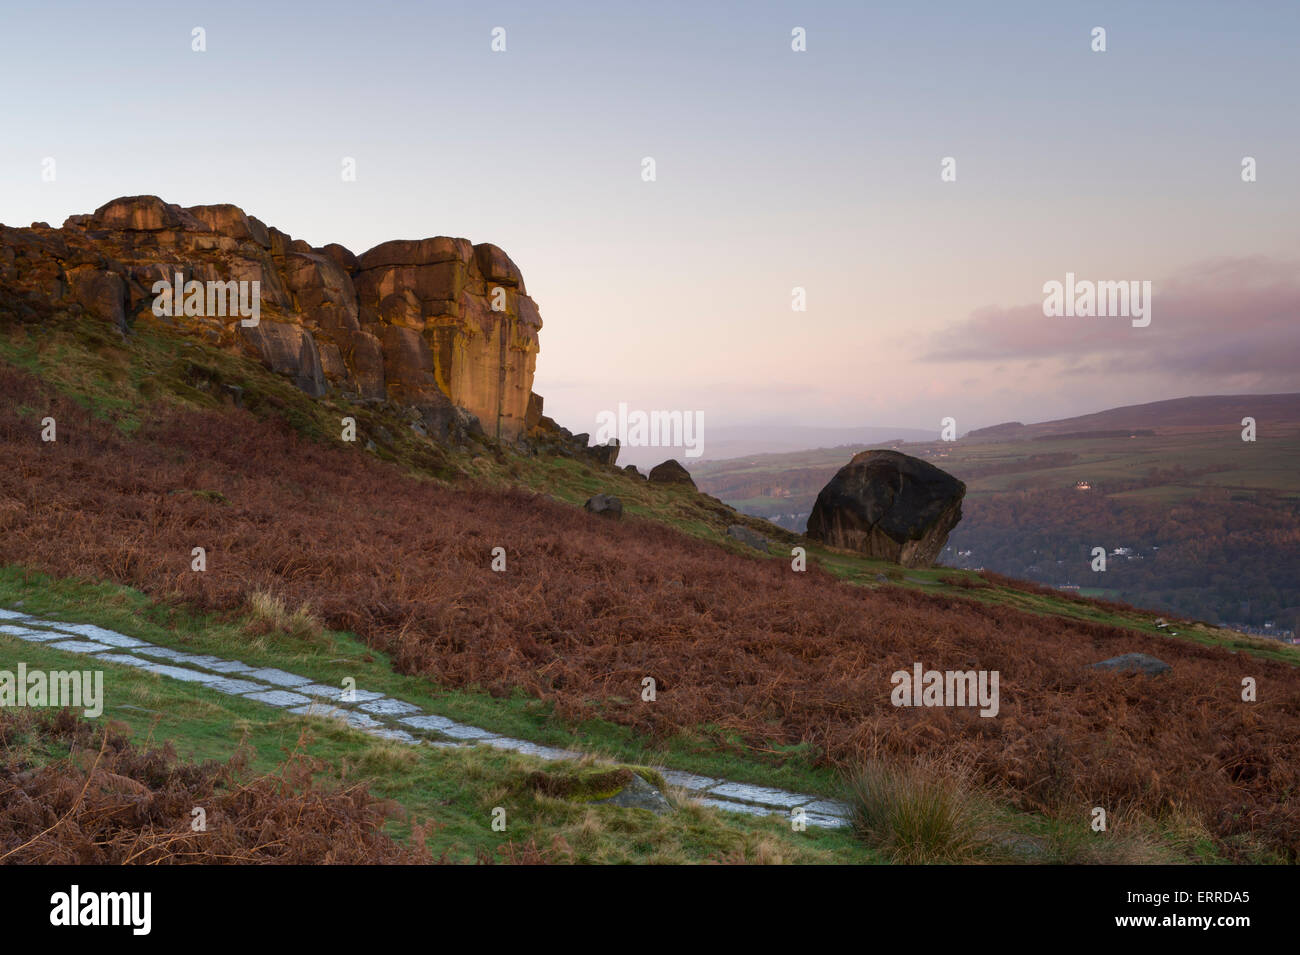 Paysage rural pittoresque de rose et bleu ciel au lever du soleil sur la haute montagne rocky outcrop - Veau Vache et rochers, Ilkley Moor, West Yorkshire, Angleterre, Royaume-Uni. Banque D'Images